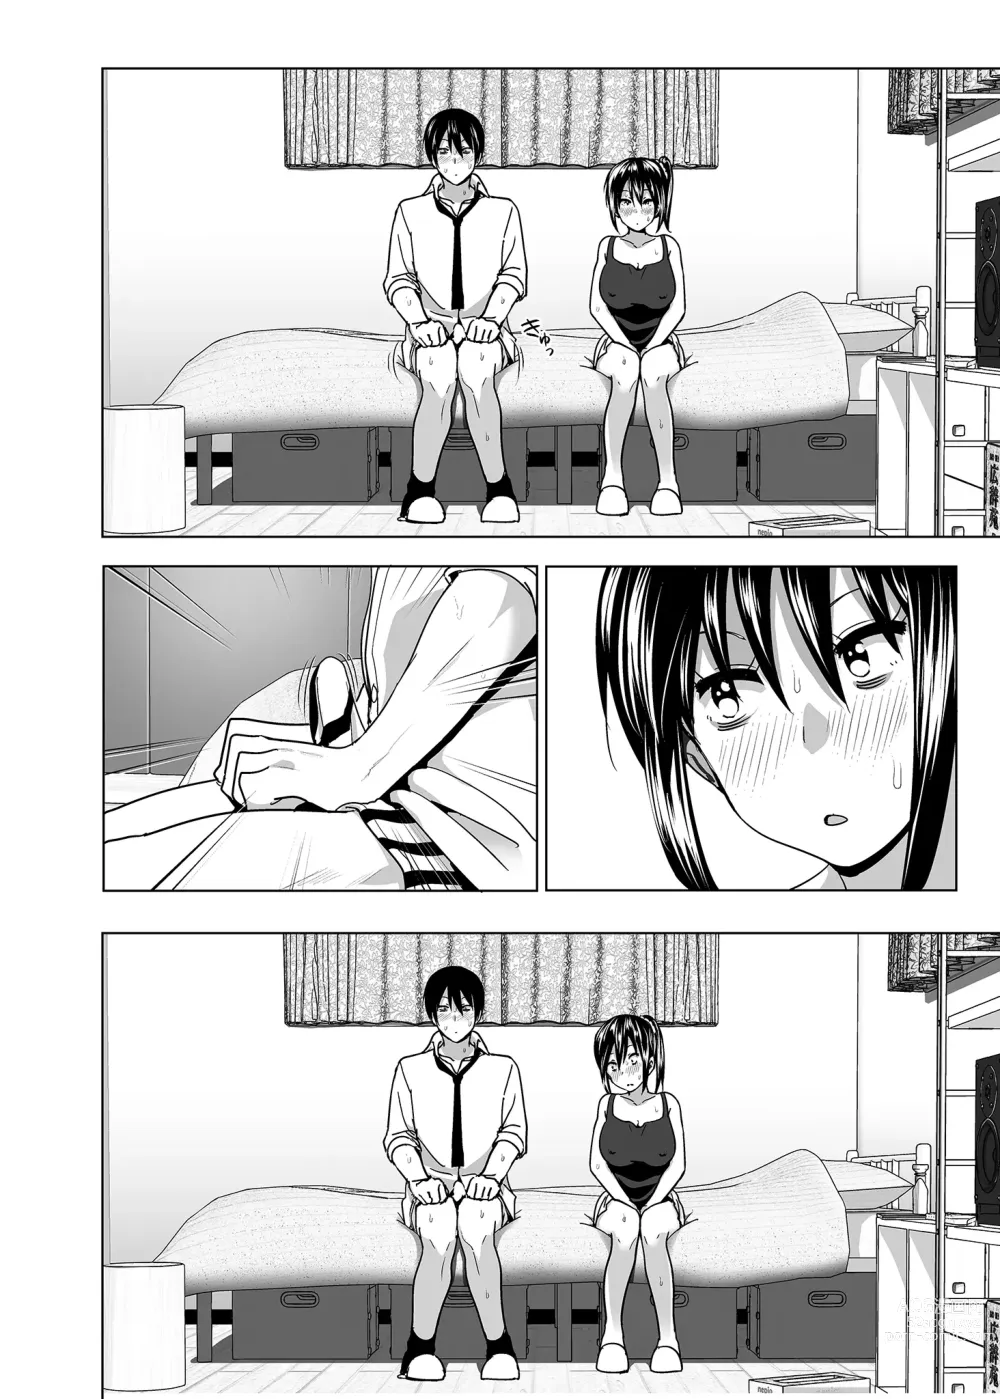 Page 69 of doujinshi 關於妹妹胸部 整顆露出來的那件事 總集篇1 (decensored)